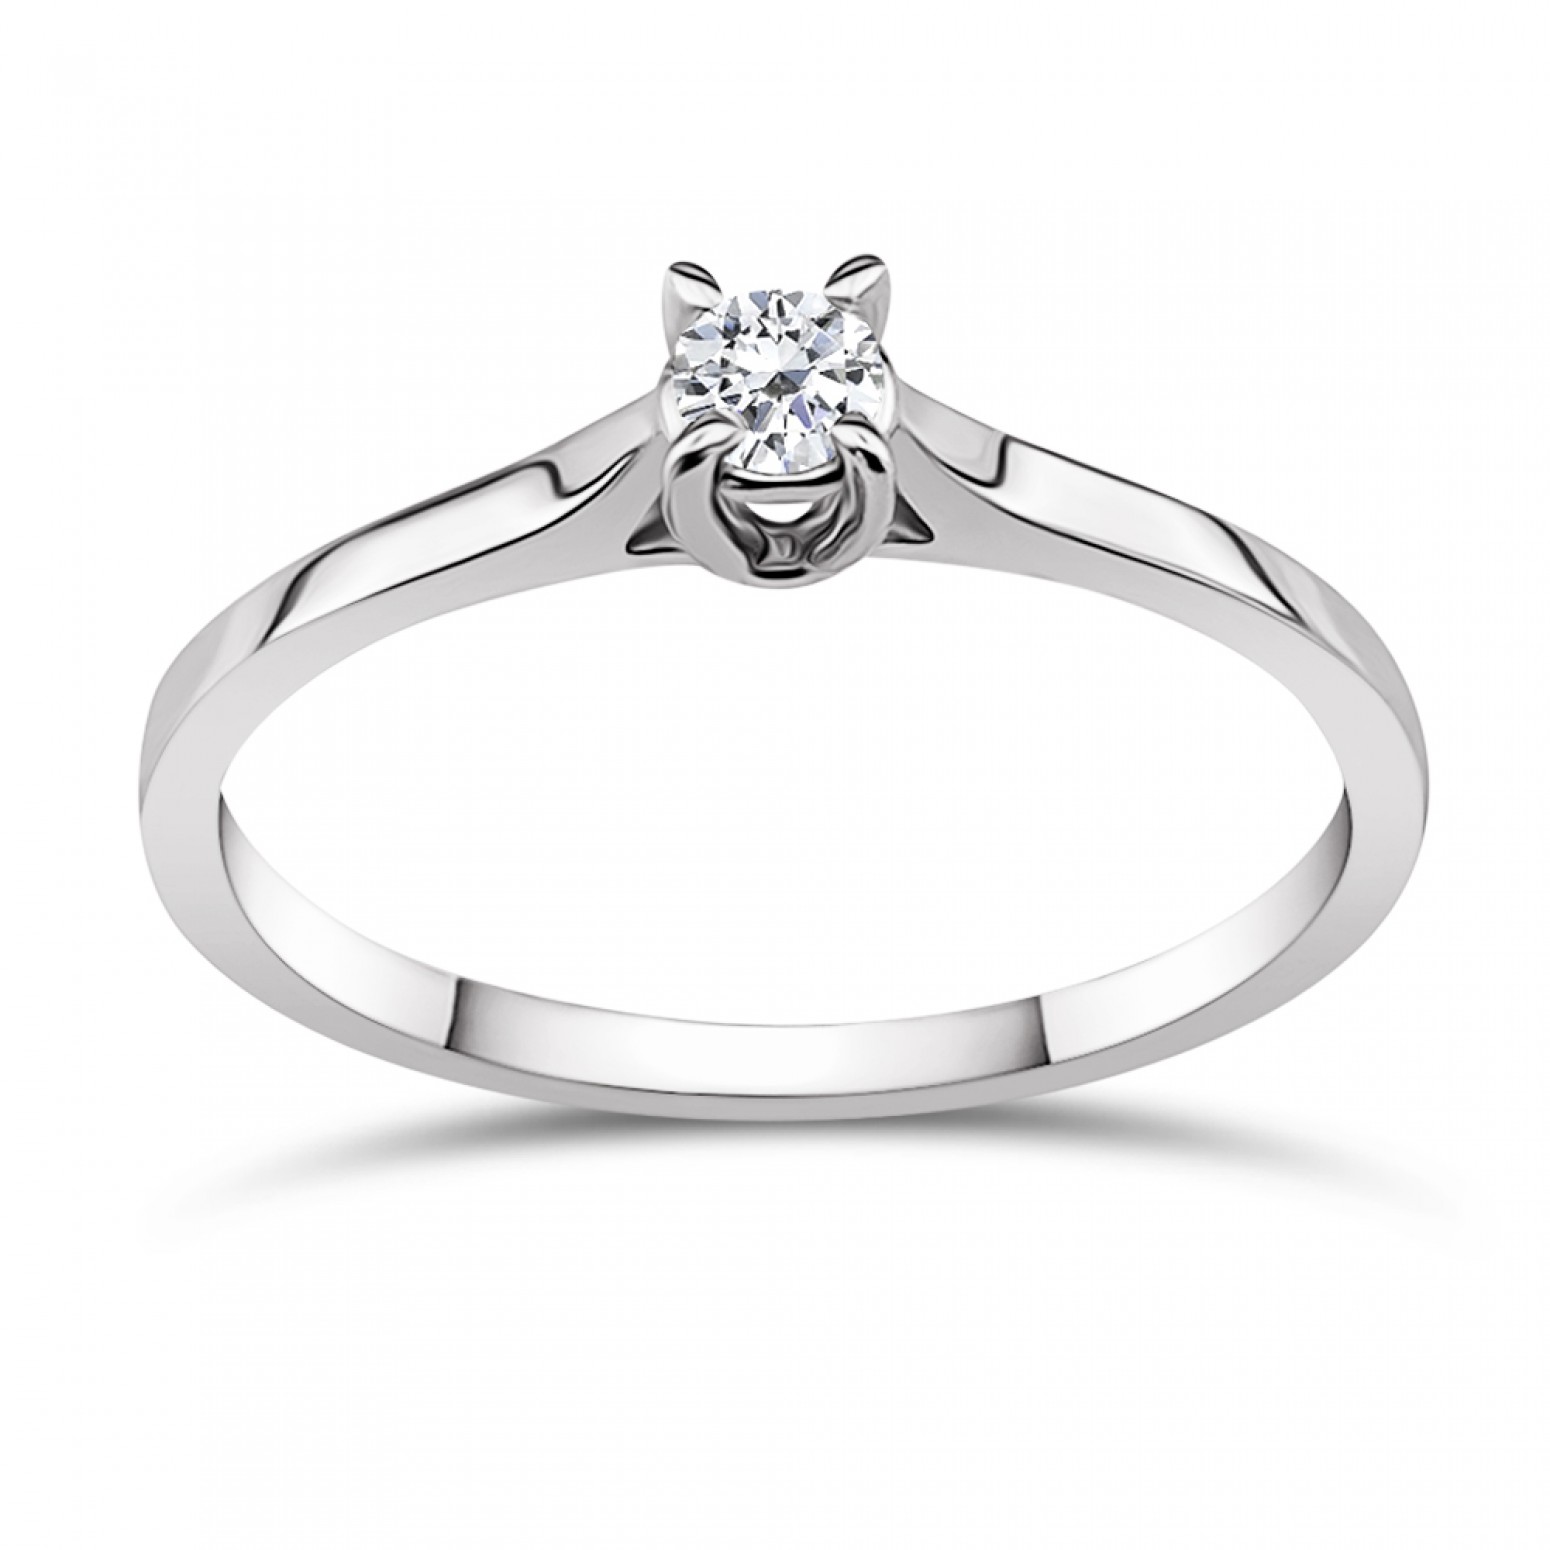 Μονόπετρο δαχτυλίδι Κ18 λευκόχρυσο με διαμάντι 0.15ct, VS1, E από το IGL da3511 ΔΑΧΤΥΛΙΔΙΑ ΑΡΡΑΒΩΝΑ Κοσμηματα - chrilia.gr